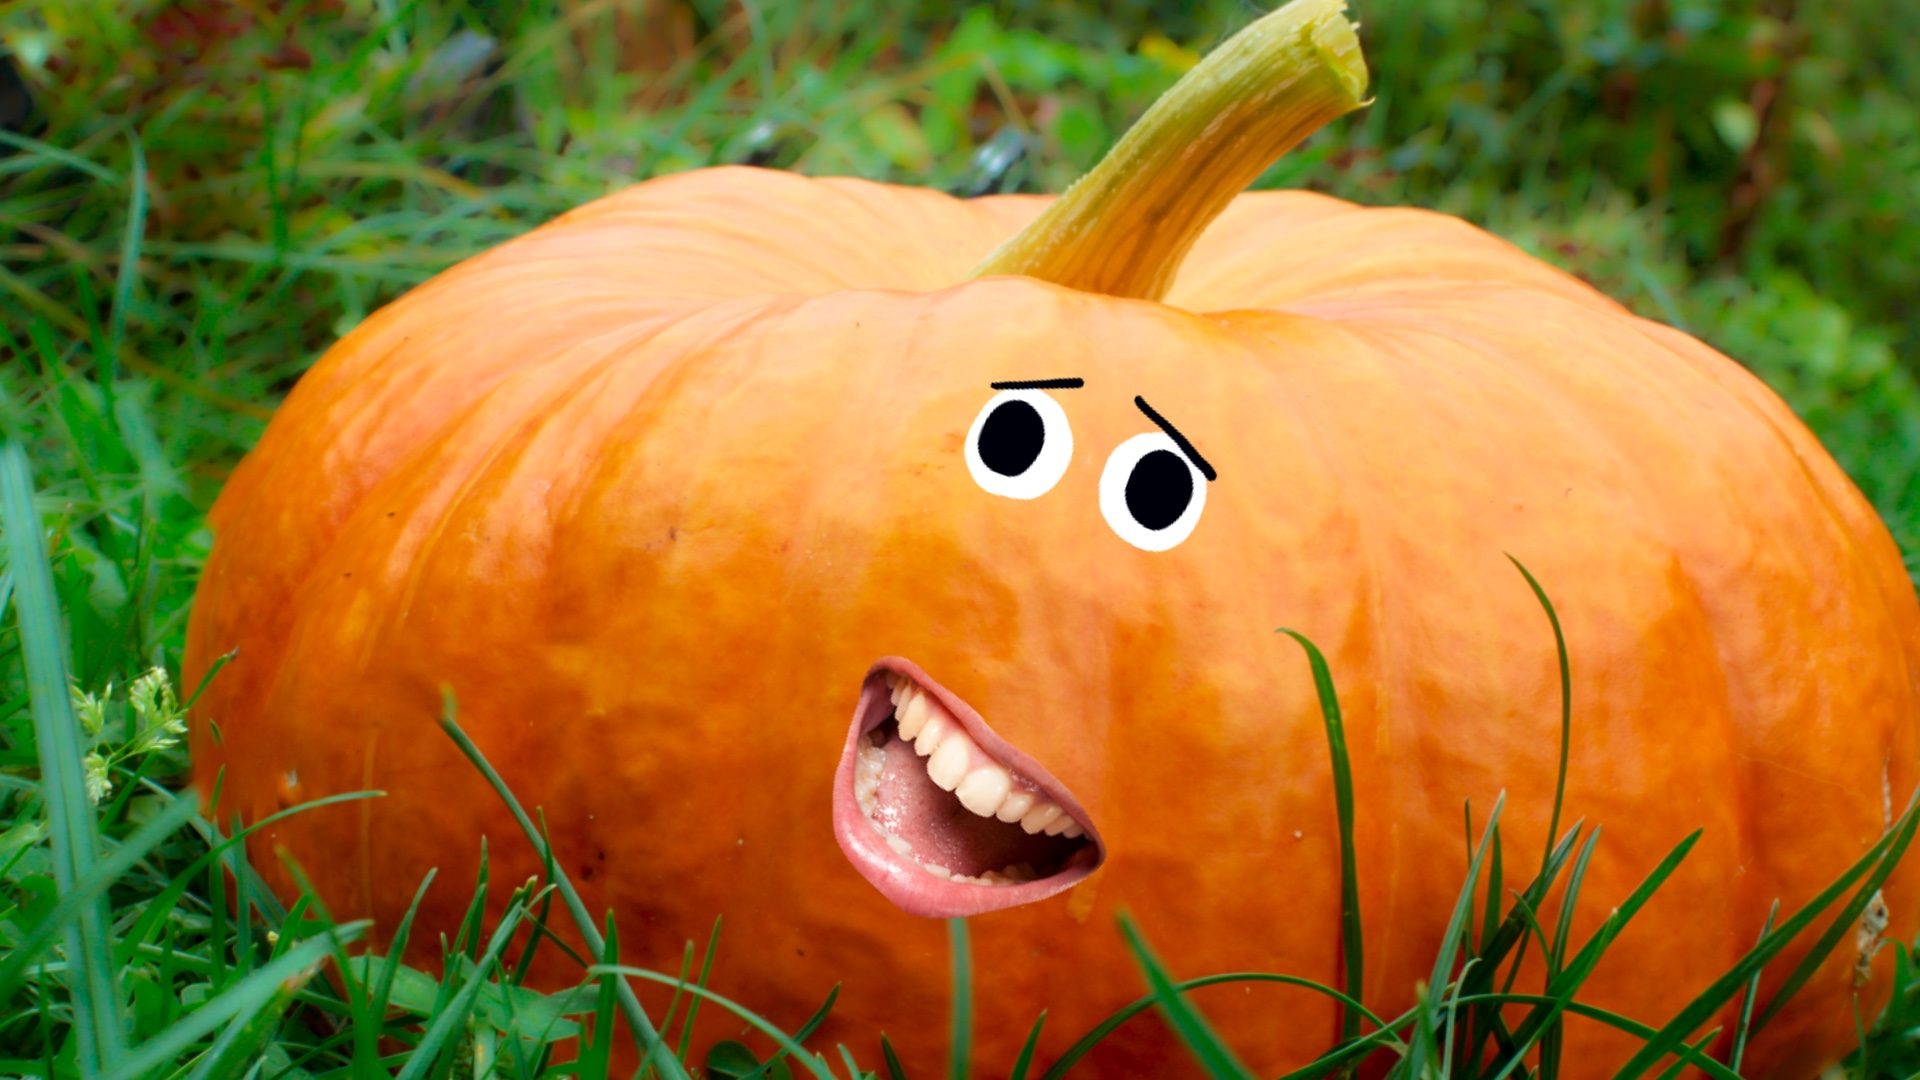 A big smiling pumpkin